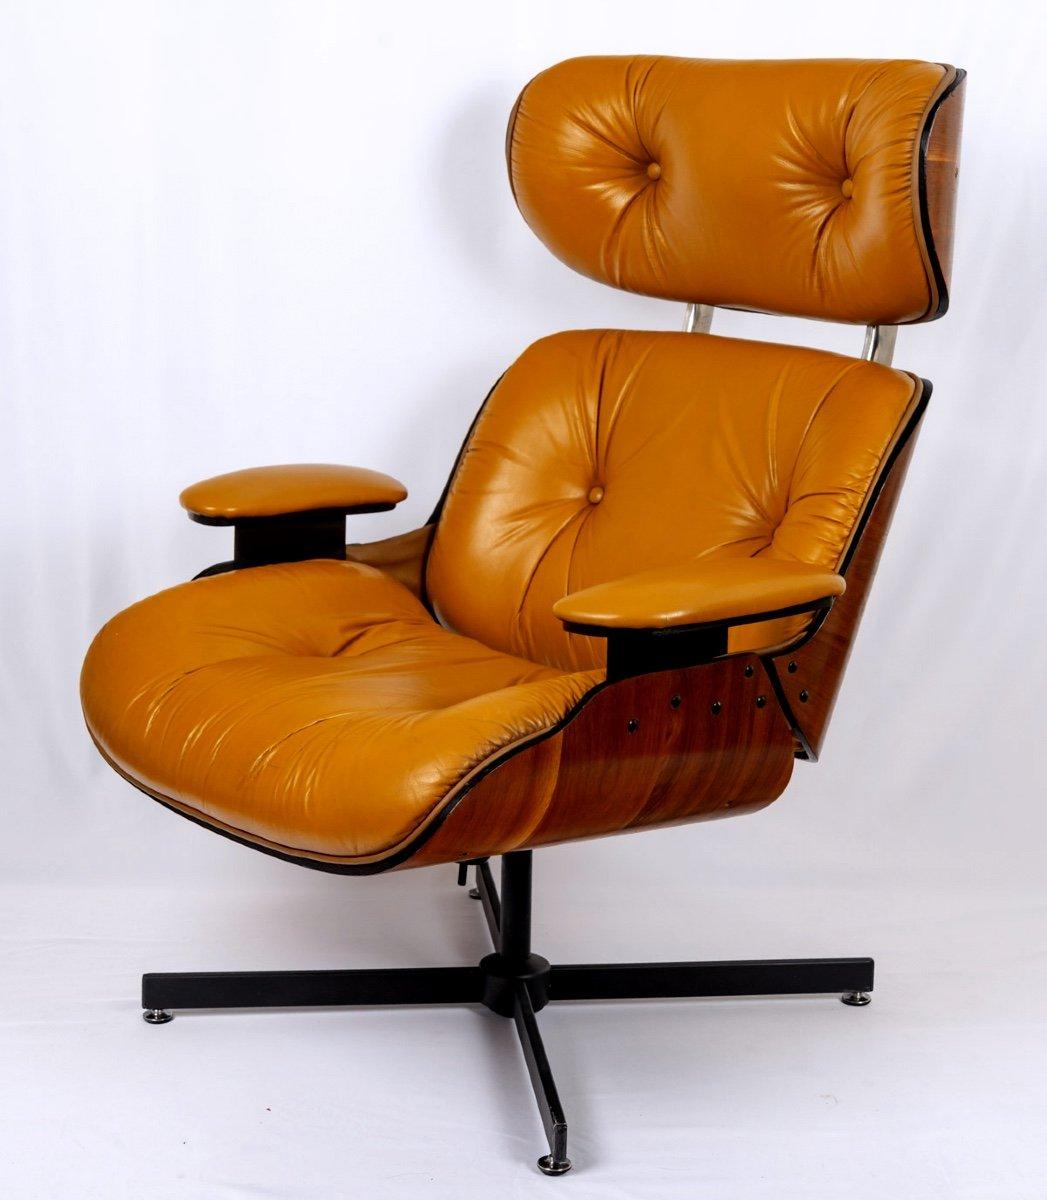 Autre Fauteuil de salon & Son Ottoman - Cuir et aluminium - Designer Charles & Ray Eames -